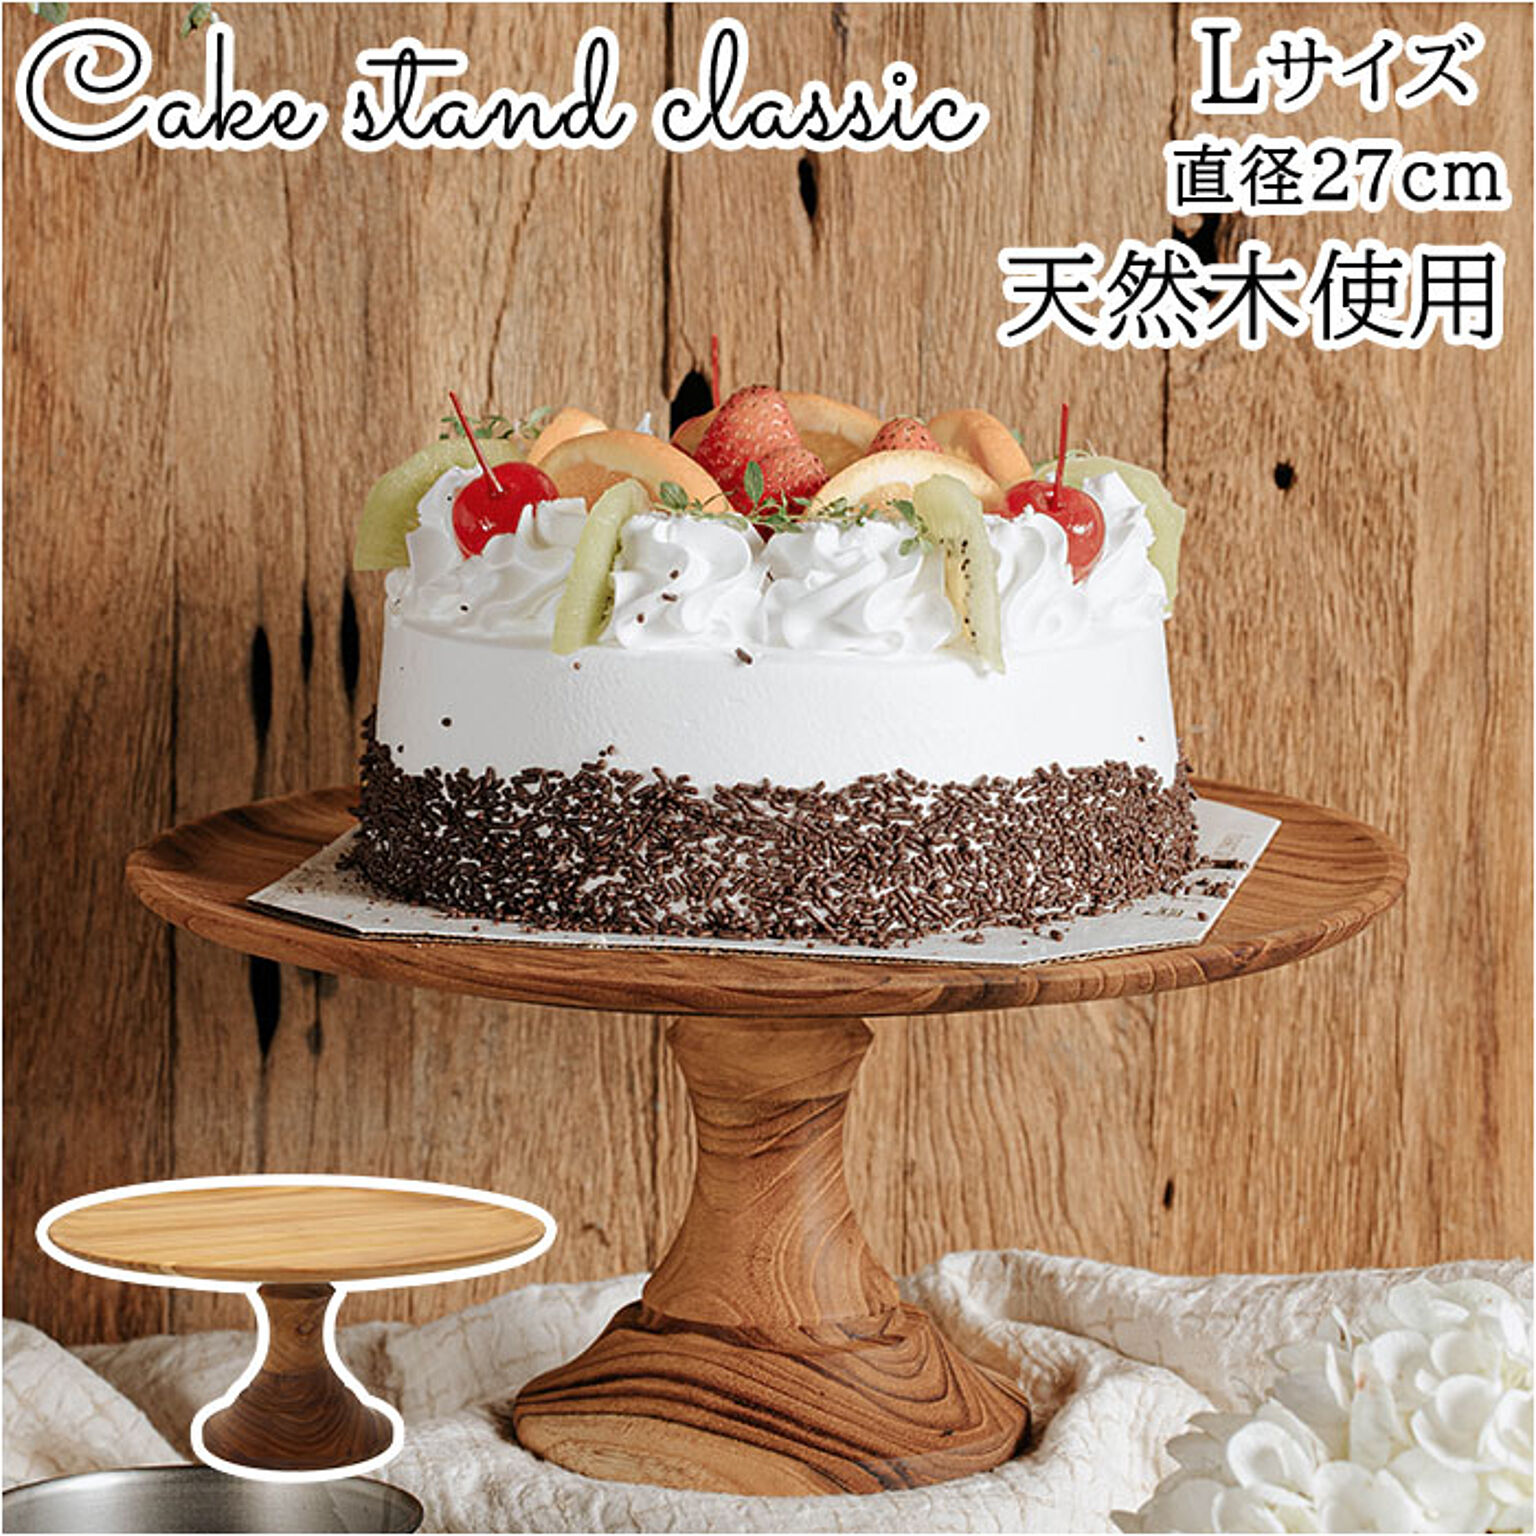 Cake stand classic L